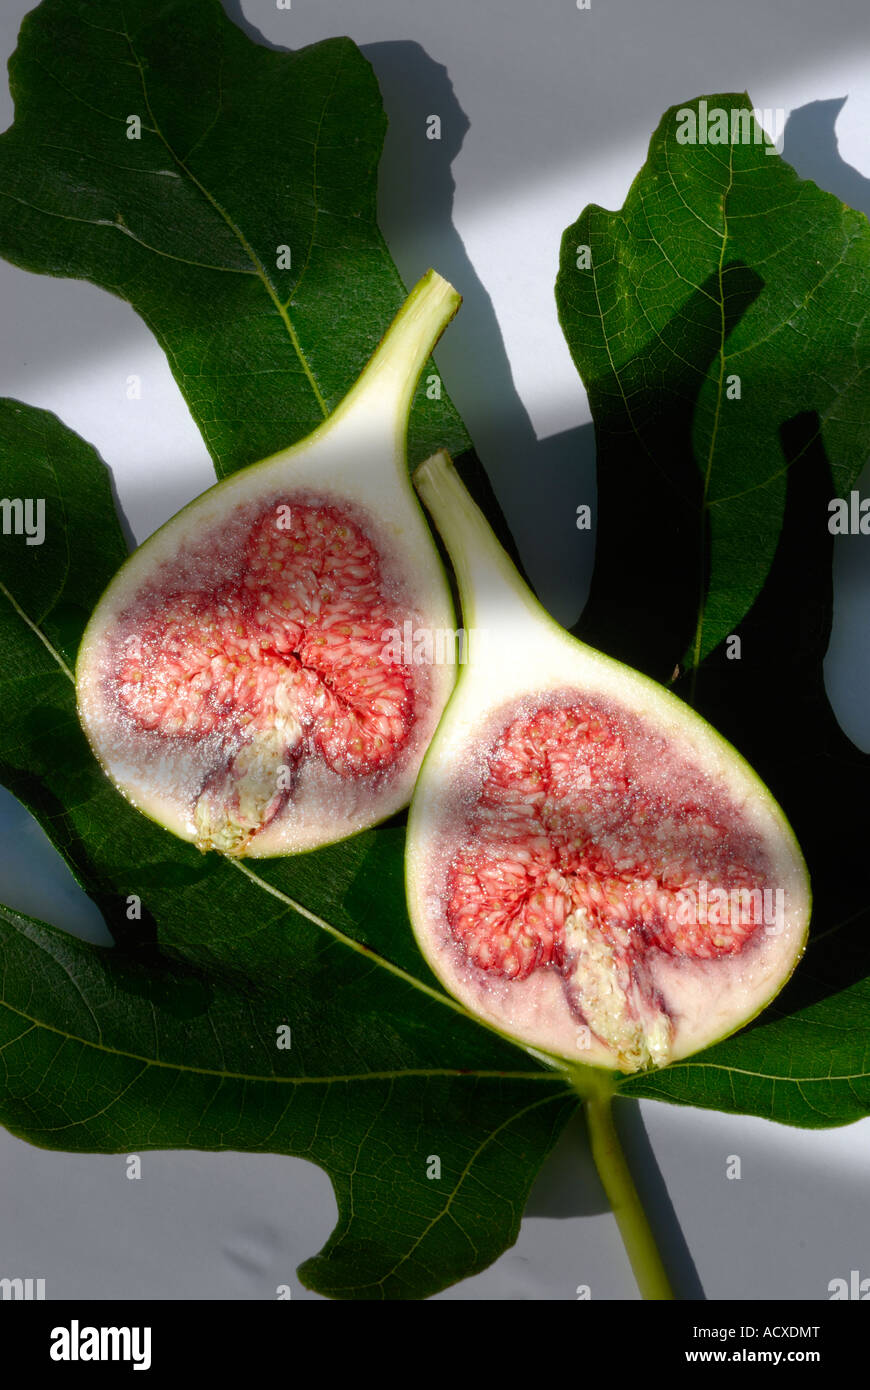 Latein, Ficus Carica. Gemeinsame, halbieren Sie gemeinsame Feigenbaum, braun Türkei Abb. A Frucht-Fig - vor dem Hintergrund eines Blattes Stockfoto